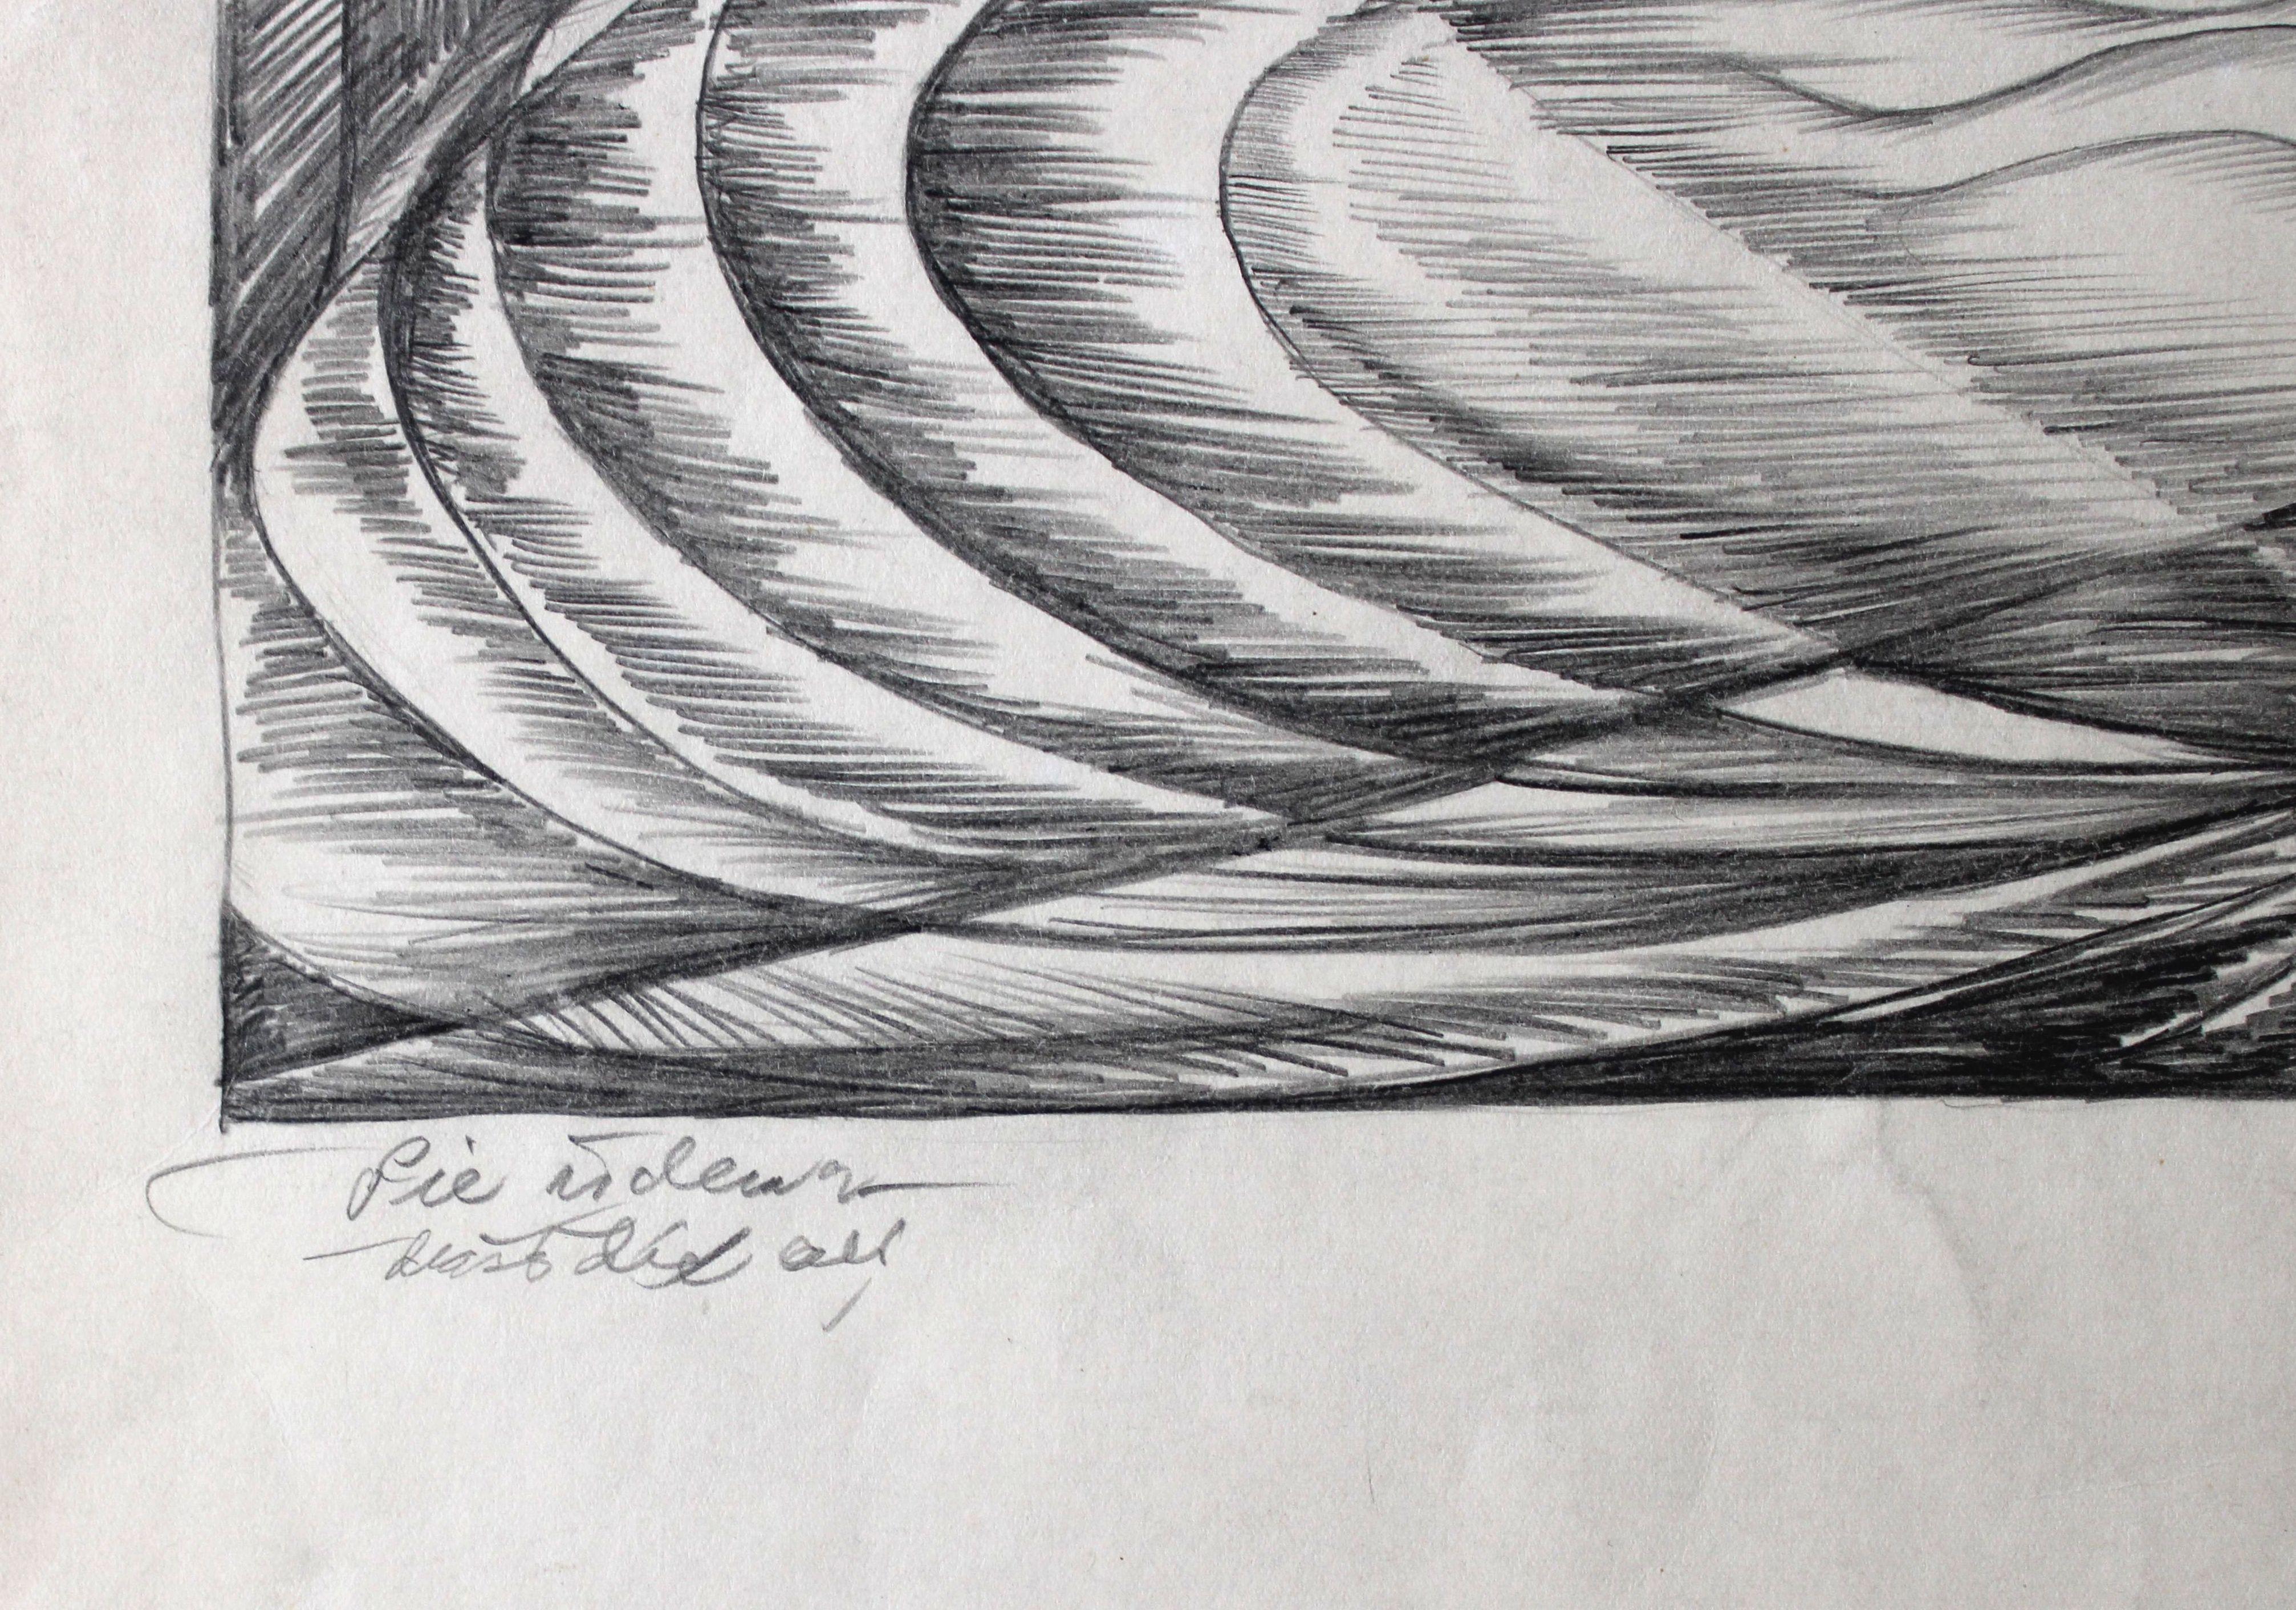 Swallows by the water. 1976, Papier, Bleistift, 45. 5 x 40. 5 cm

Dzidra Ezergaile (1926-2013)
Geboren in Riga. Schuljahre wechseln sich mit Sommerarbeit auf dem Lande ab. 1947 begann sie ihr Studium an der Fakultät für Architektur der LVU,